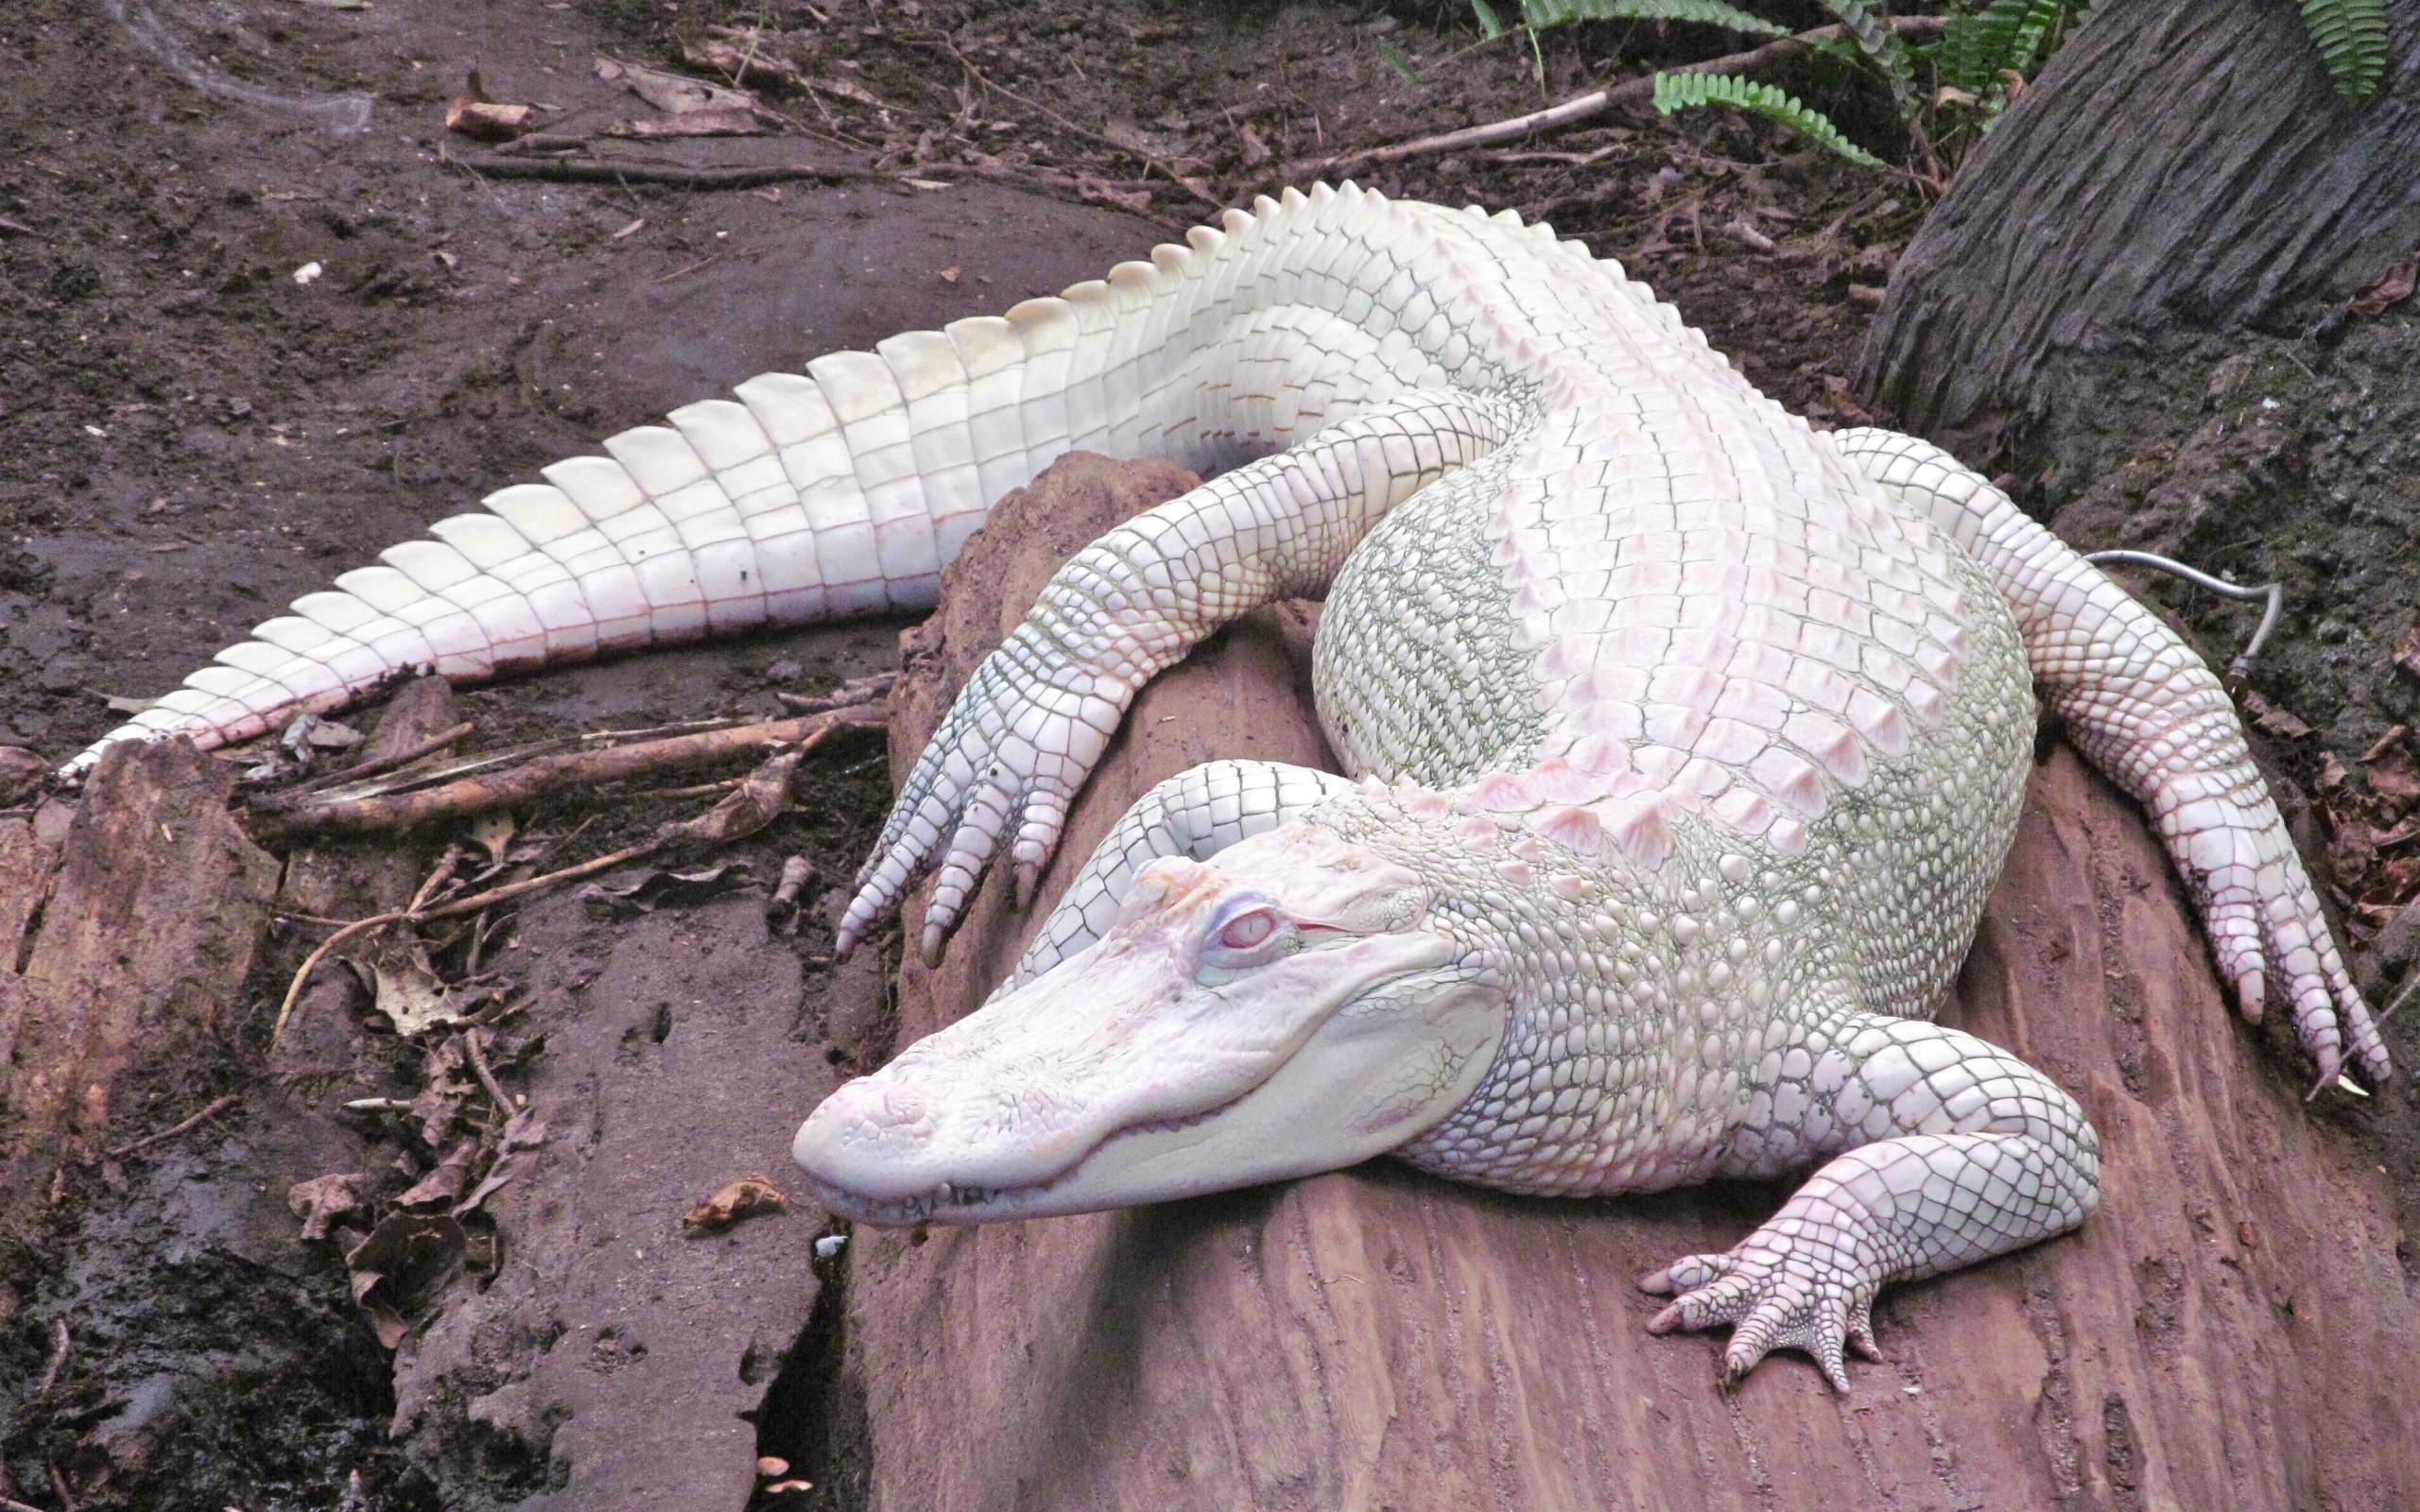 General 2560x1600 alligators albino nature animals reptiles